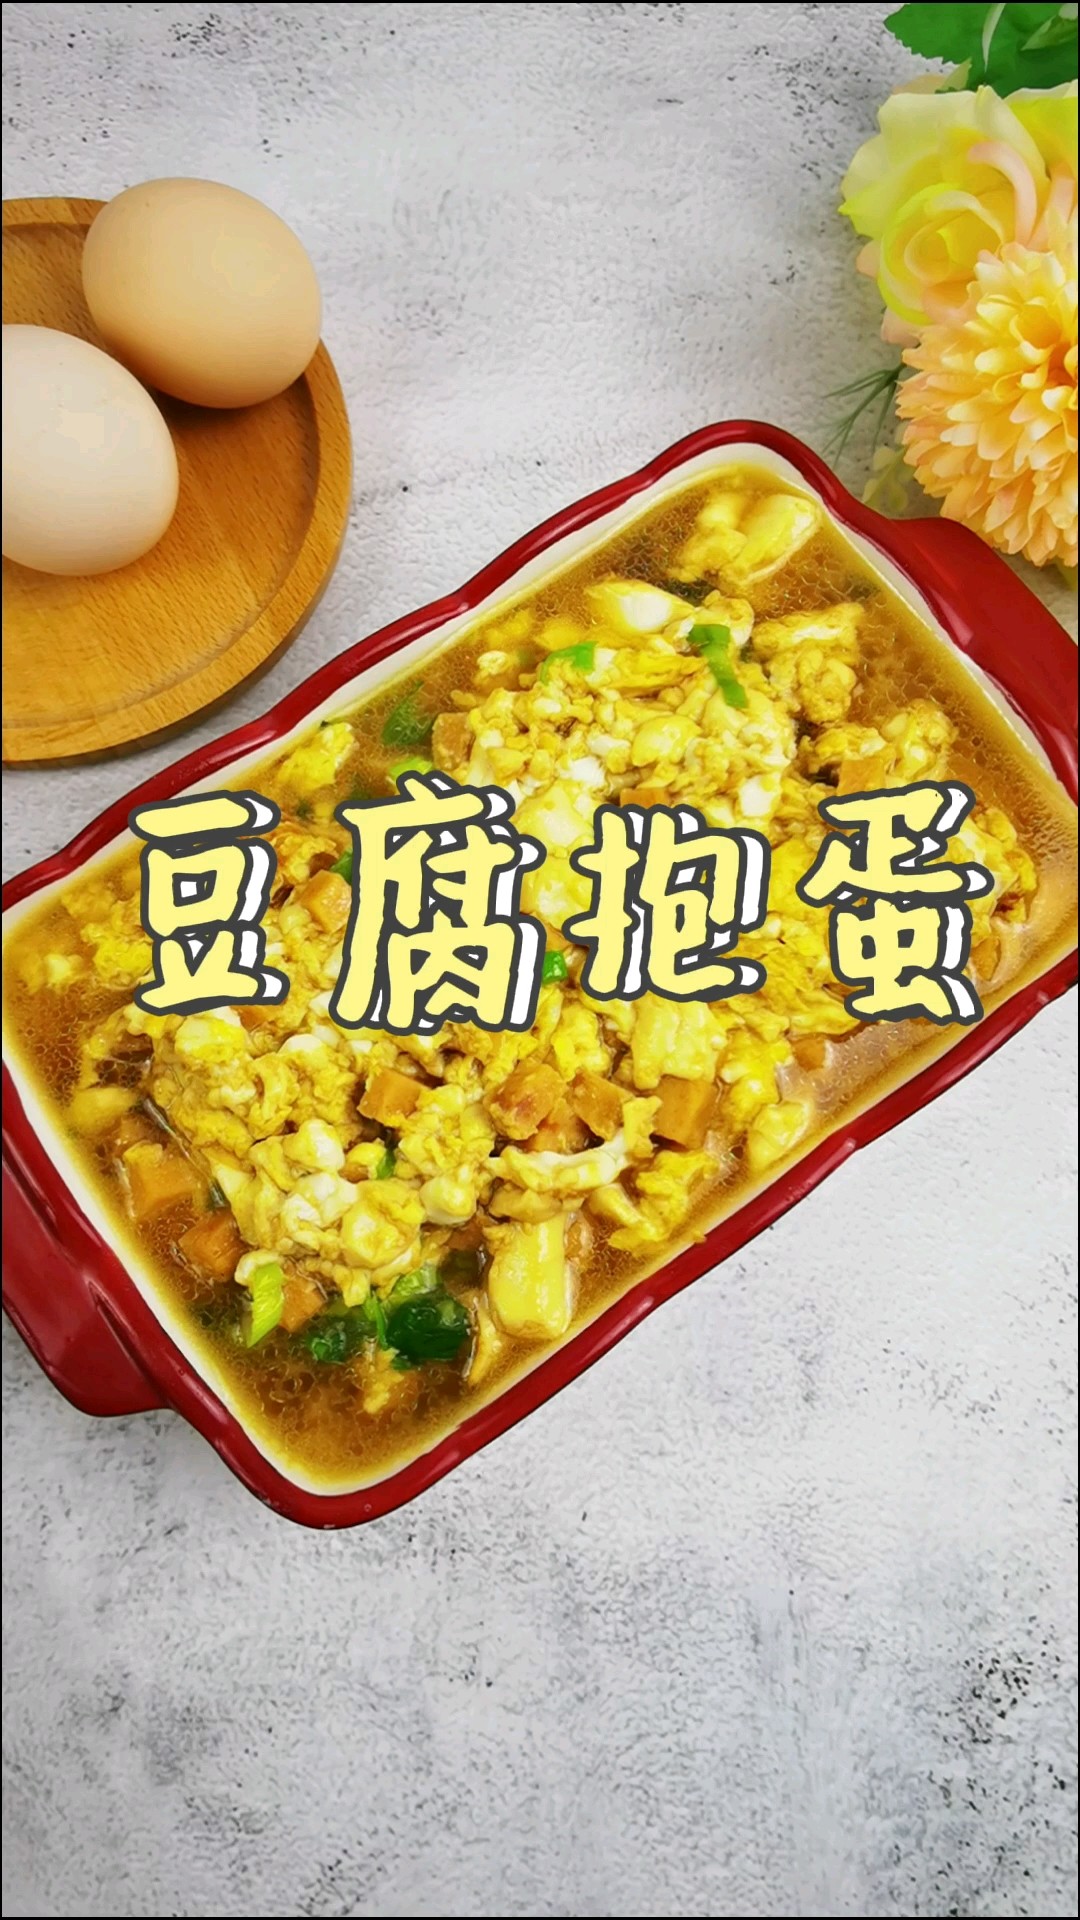 The Fairy Way to Eat Tofu and Eggs-tofu Hugs Eggs, A Tender Bite